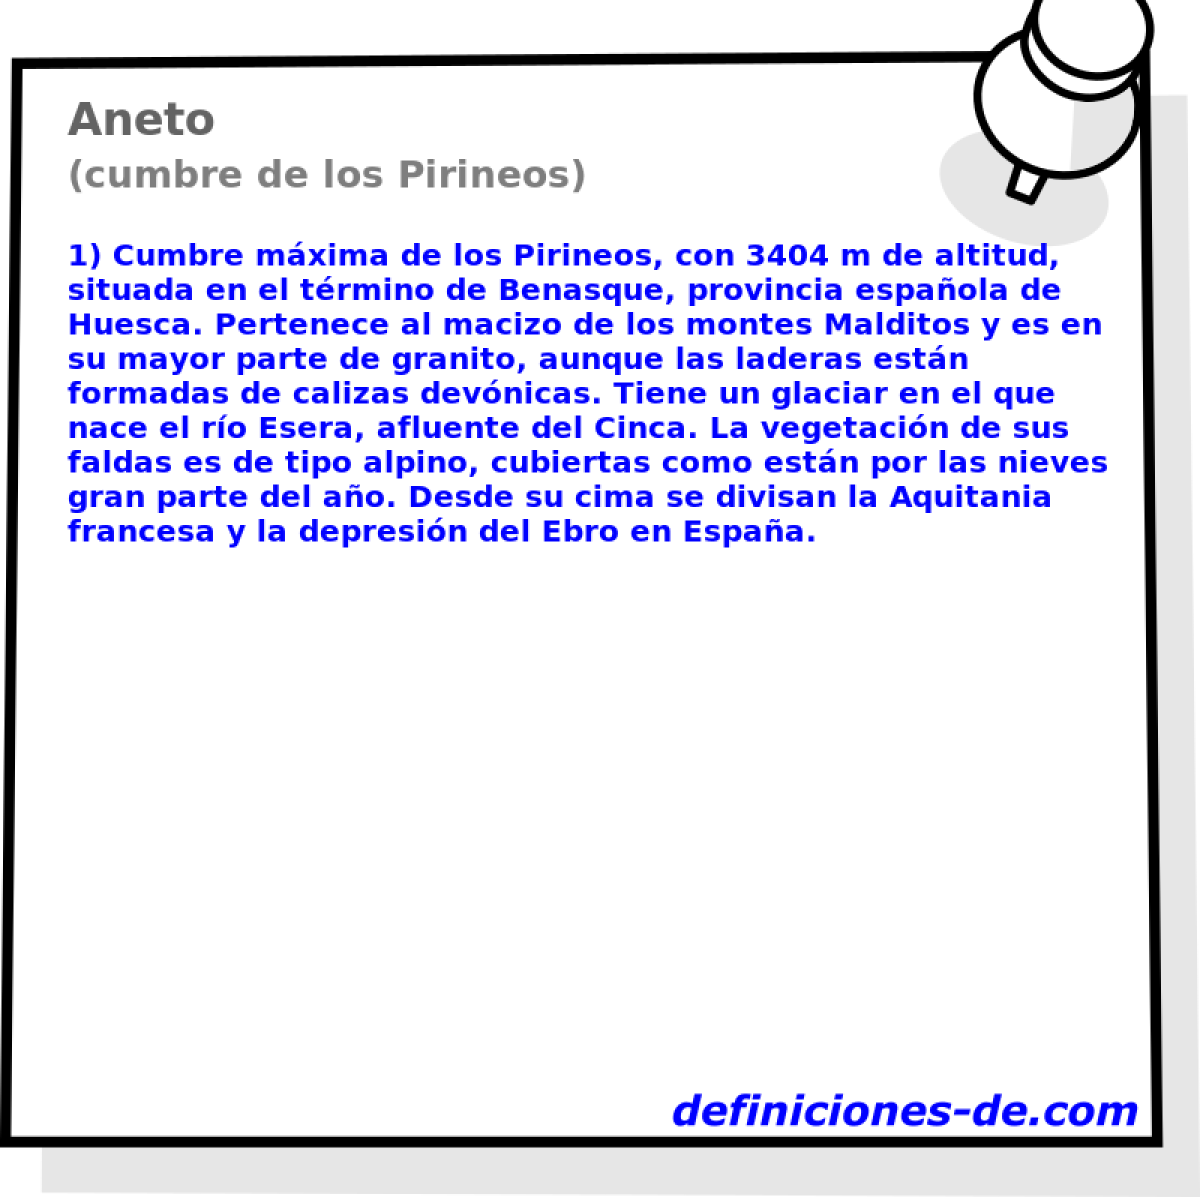 Aneto (cumbre de los Pirineos)